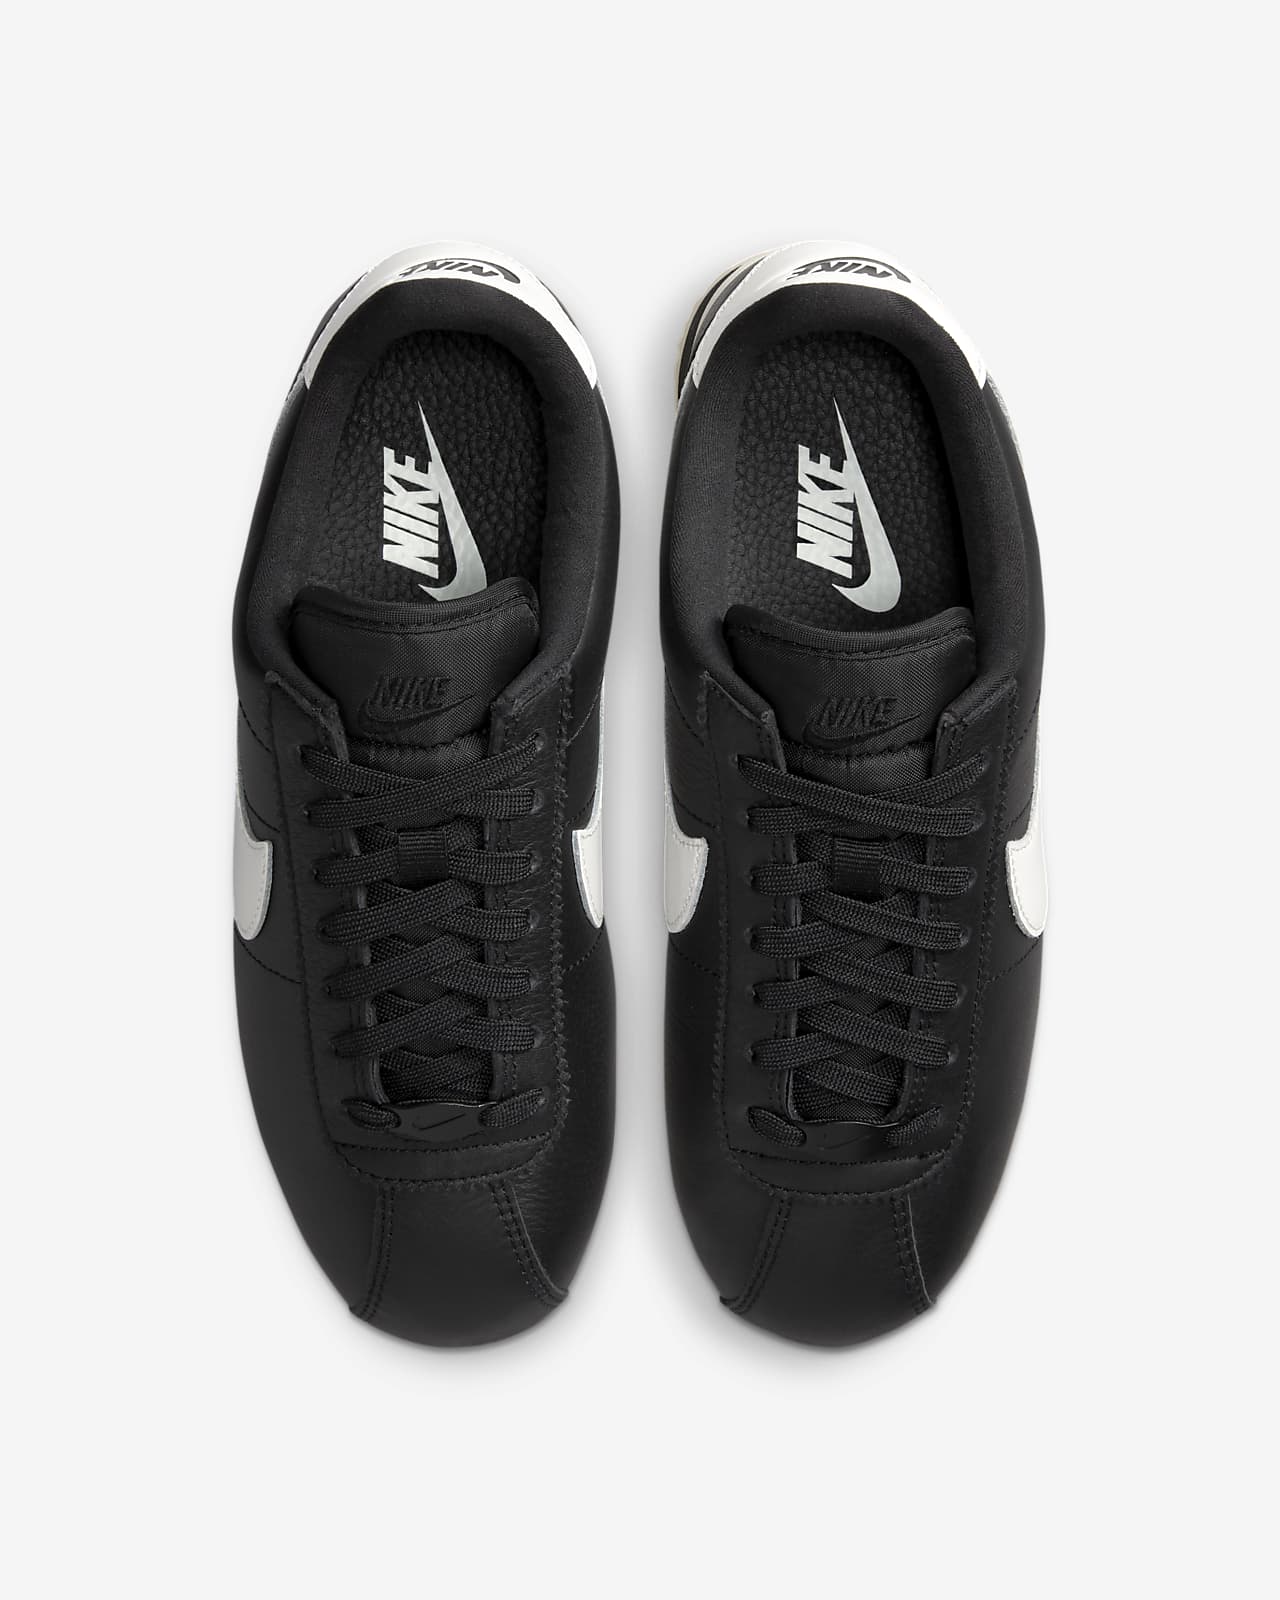 Nike Cortez 23 Premium Leather Shoes